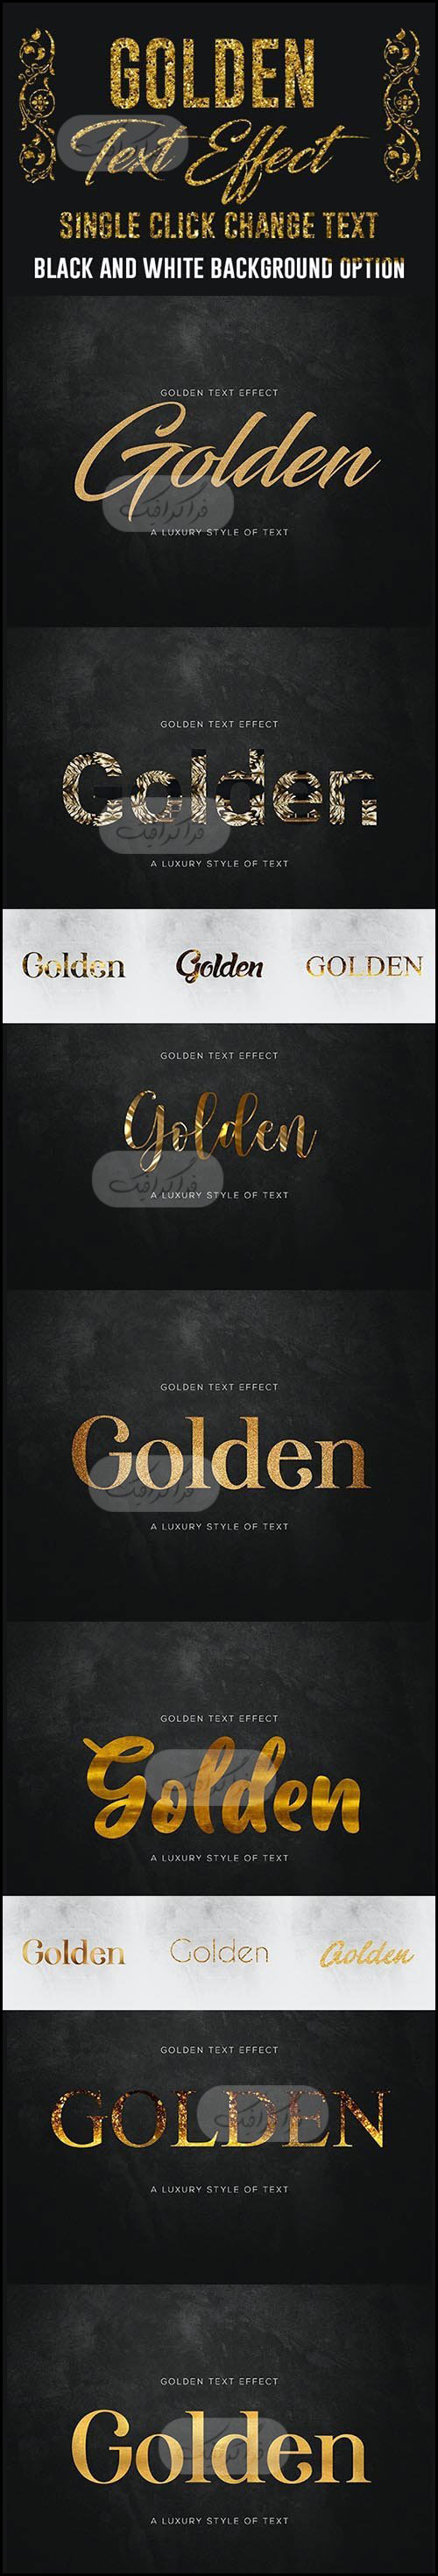 دانلود استایل طلایی فتوشاپ - Gold Text Effect - شماره 8